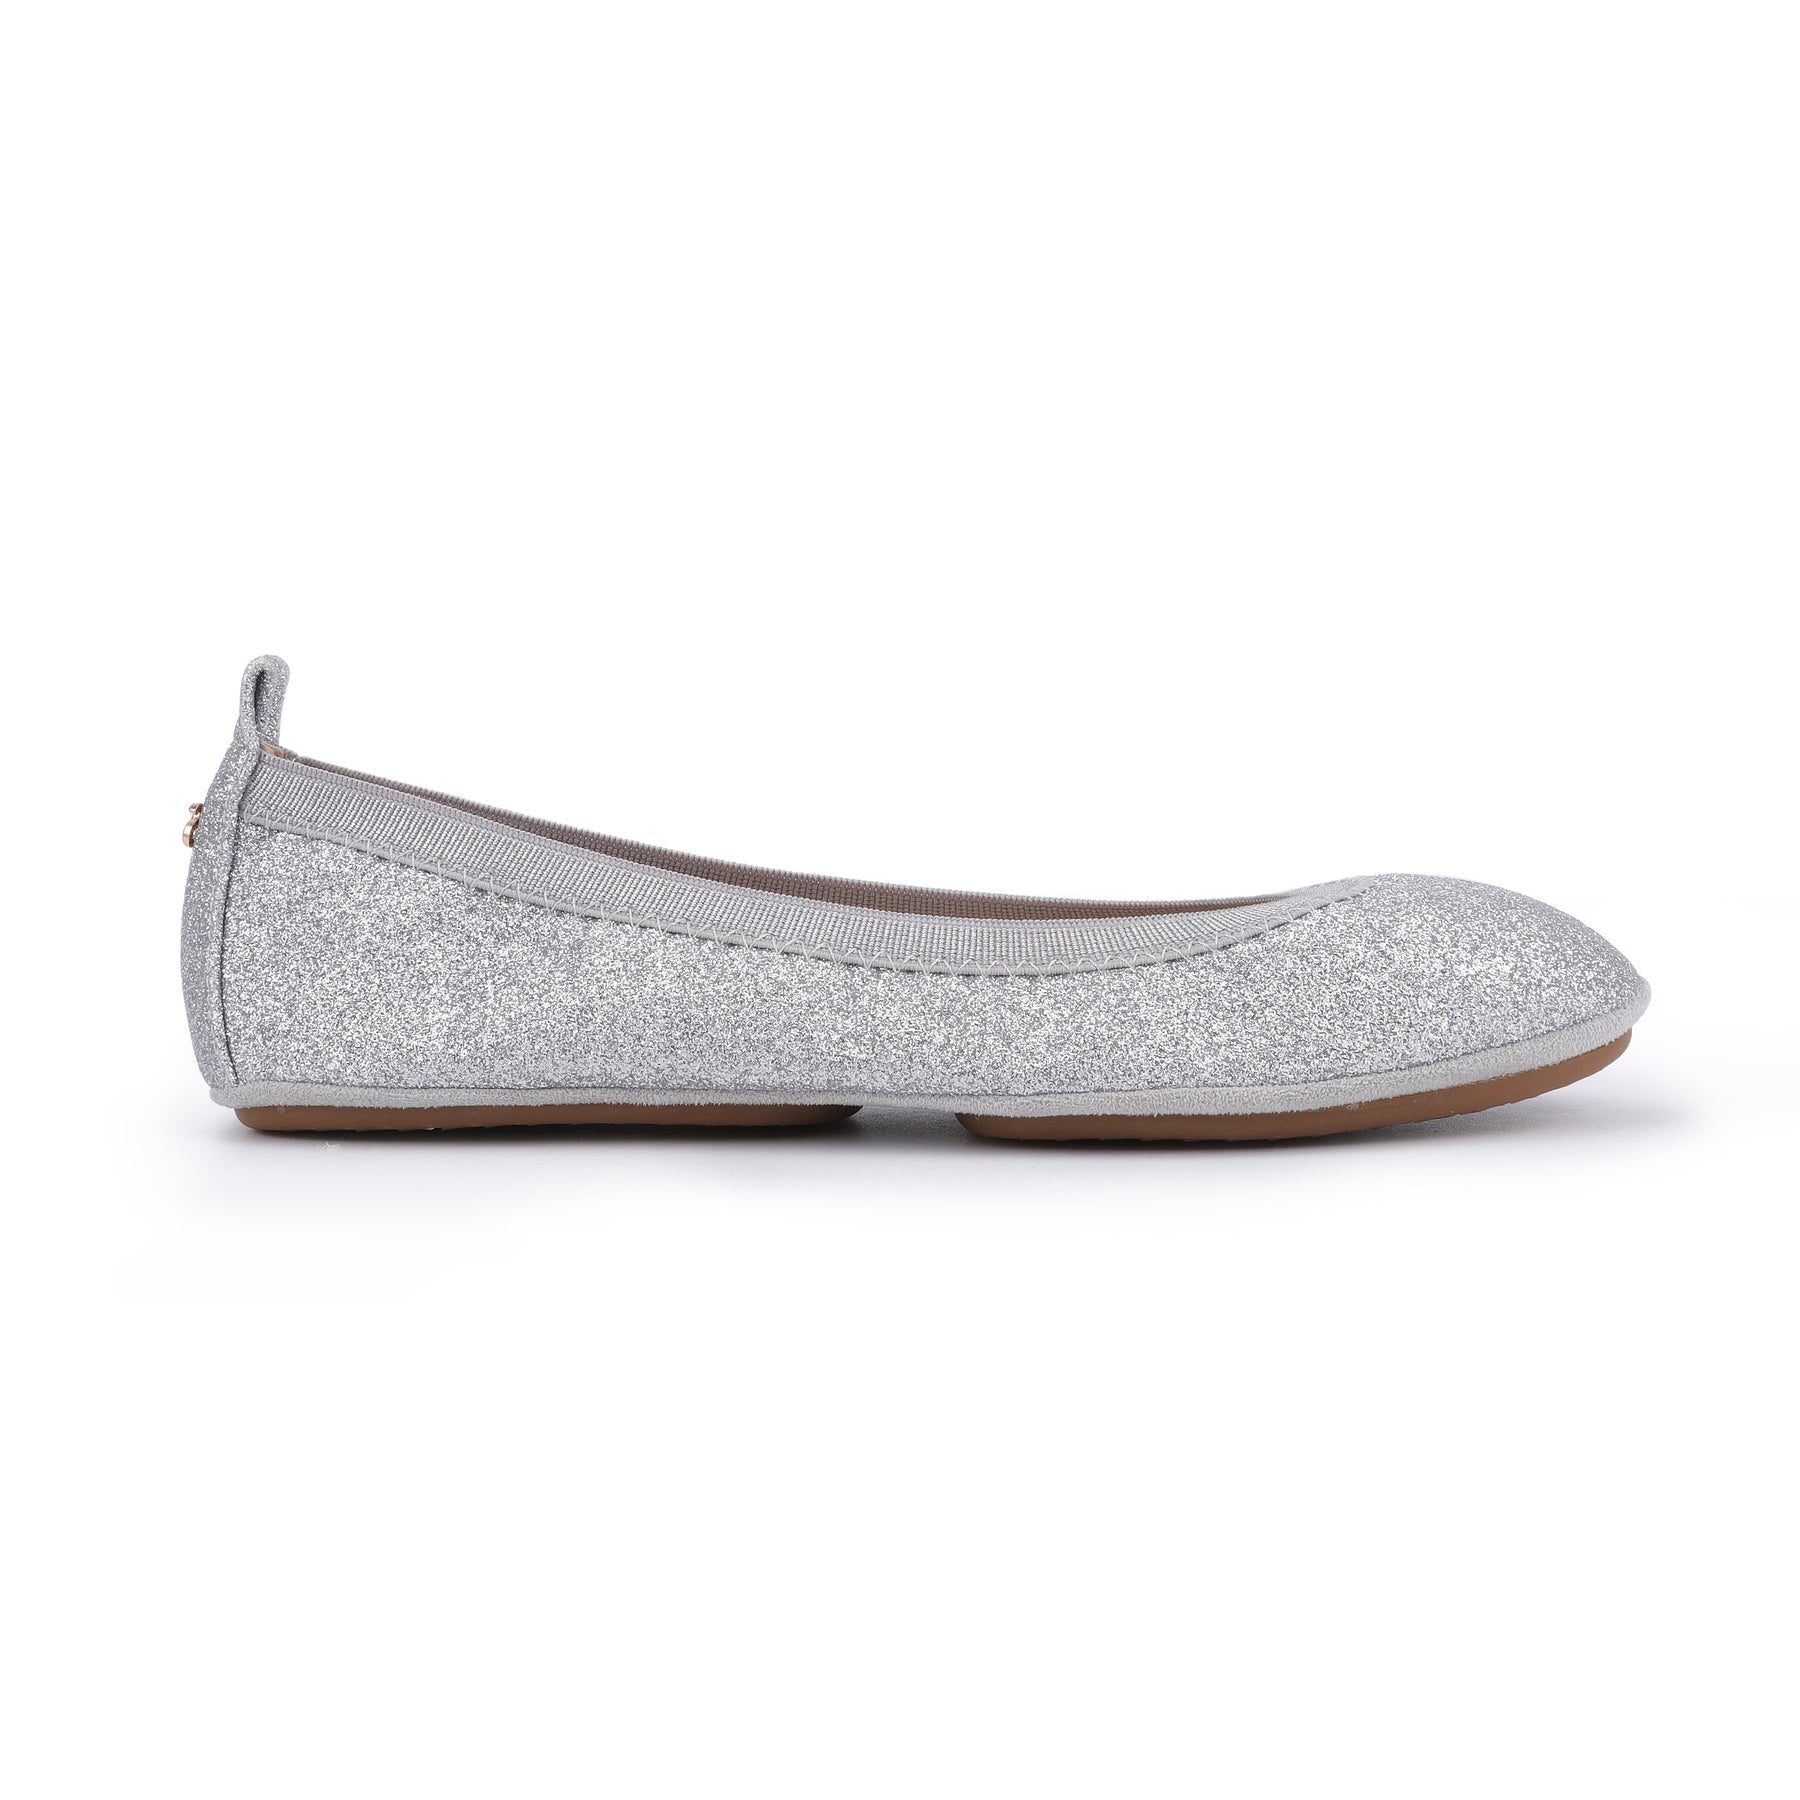 Samara Foldable Ballet Flat in Silver Sandpaper Glitter